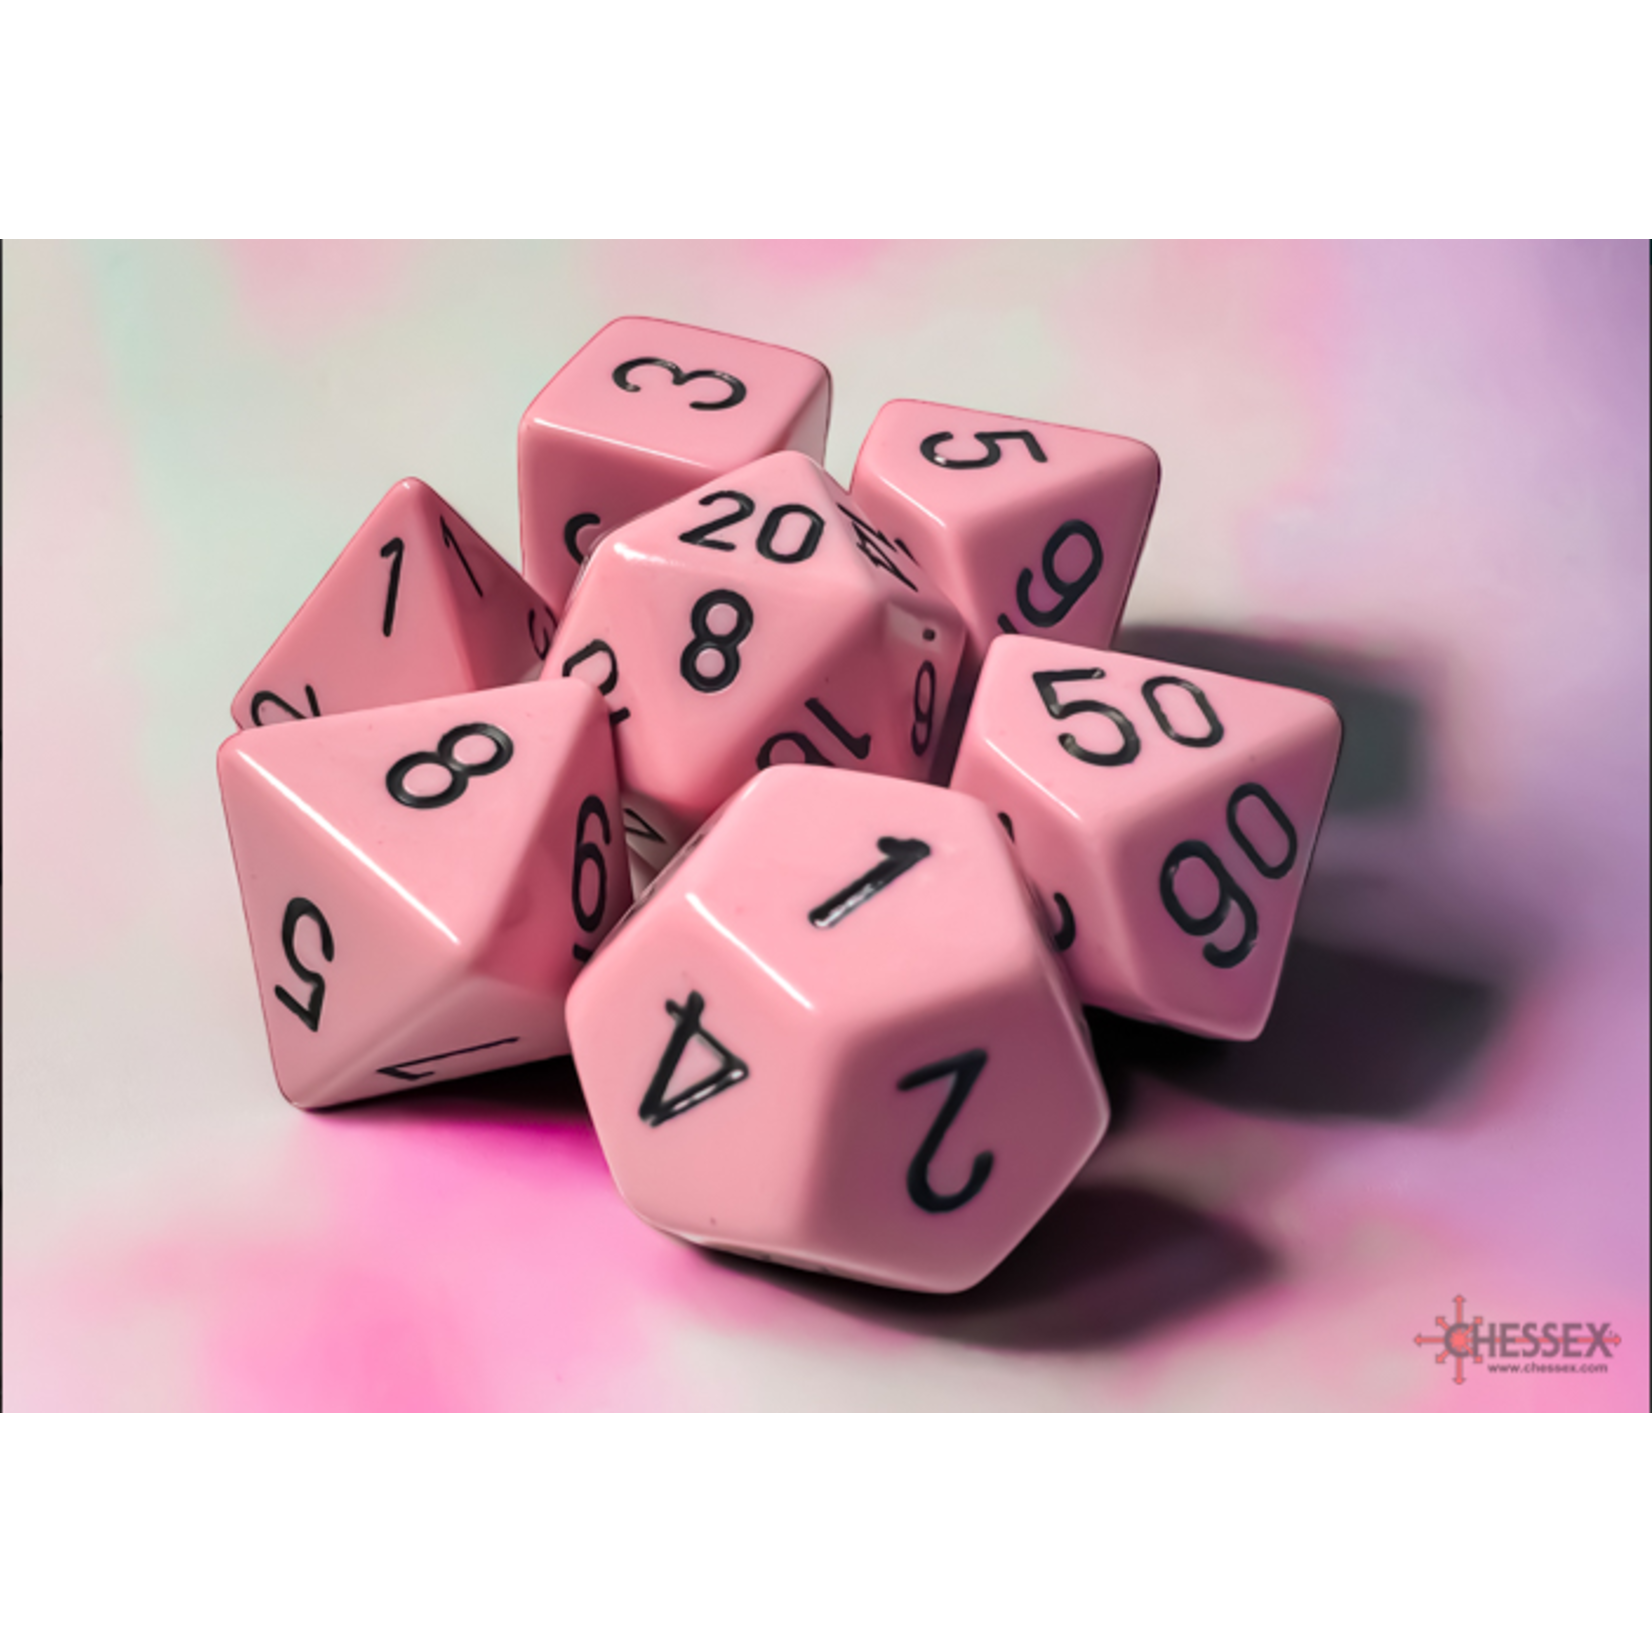 Chessex Opaque Pastel Pink/Black 7-die set